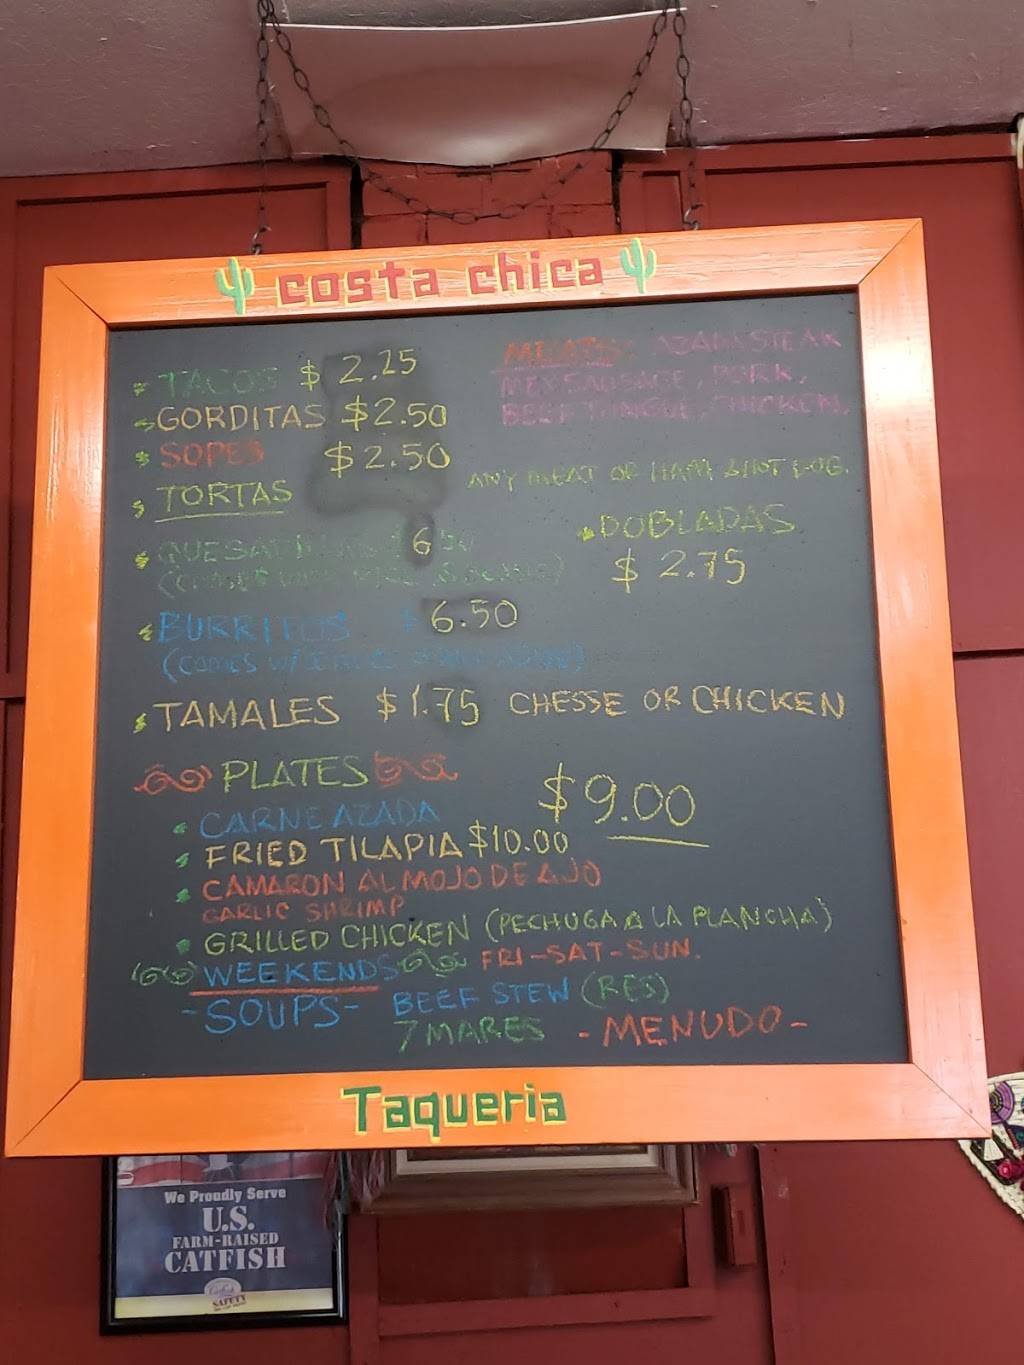 Taqueria Costa Chica | restaurant | 441 W Willow St, Scottsboro, AL 35768, USA